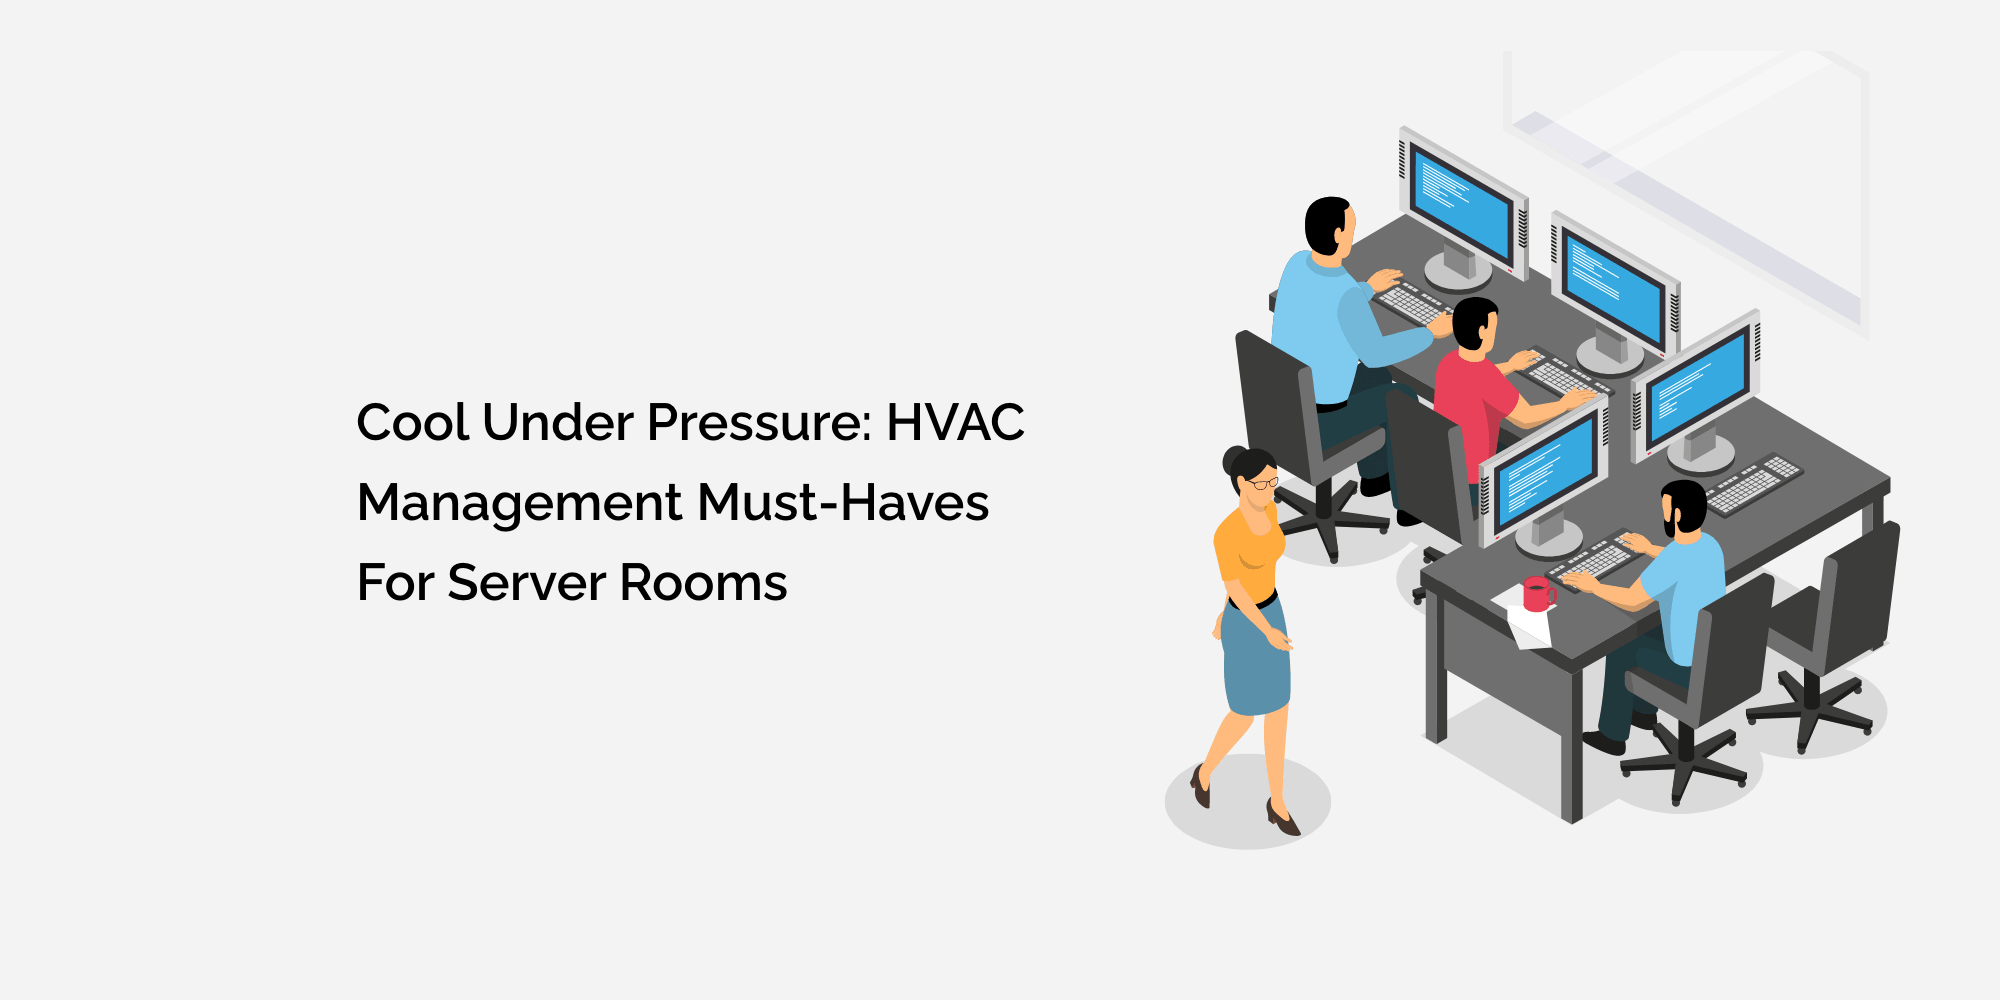 Cool Under Pressure: HVAC Management Must-Haves for Server Rooms